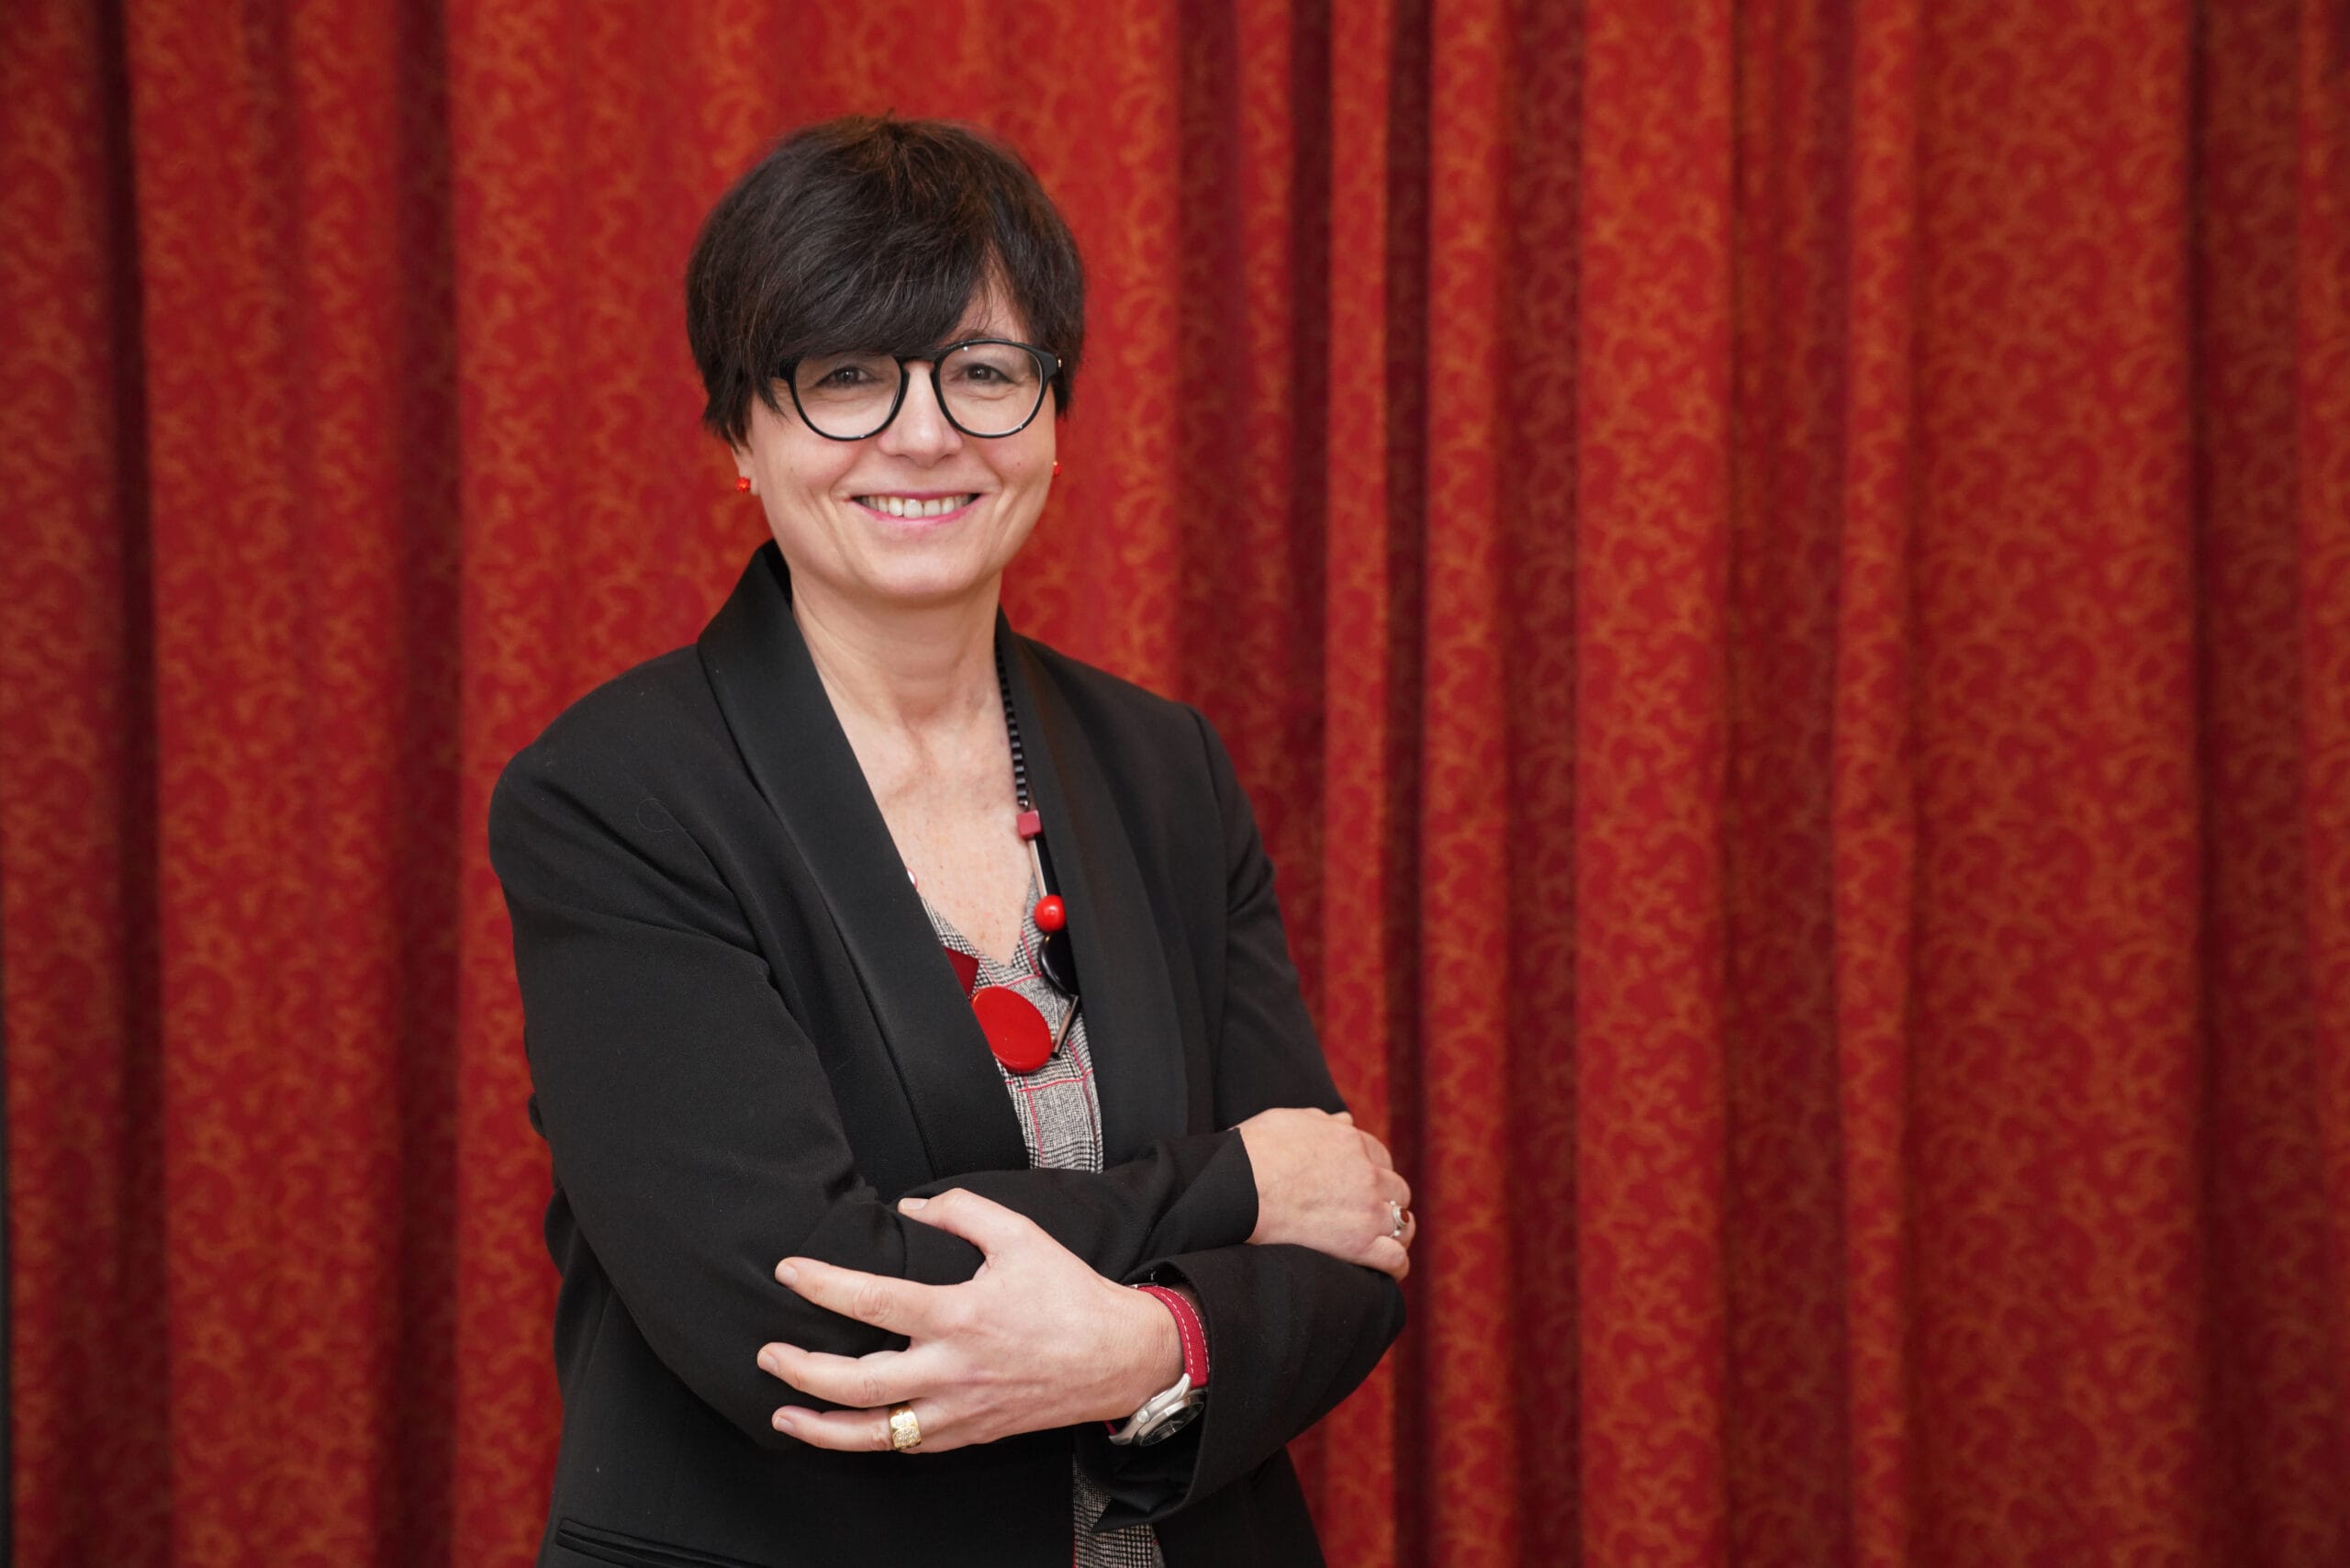 Maria Chiara Carrozza presidente Cnr: prima donna in storia ente